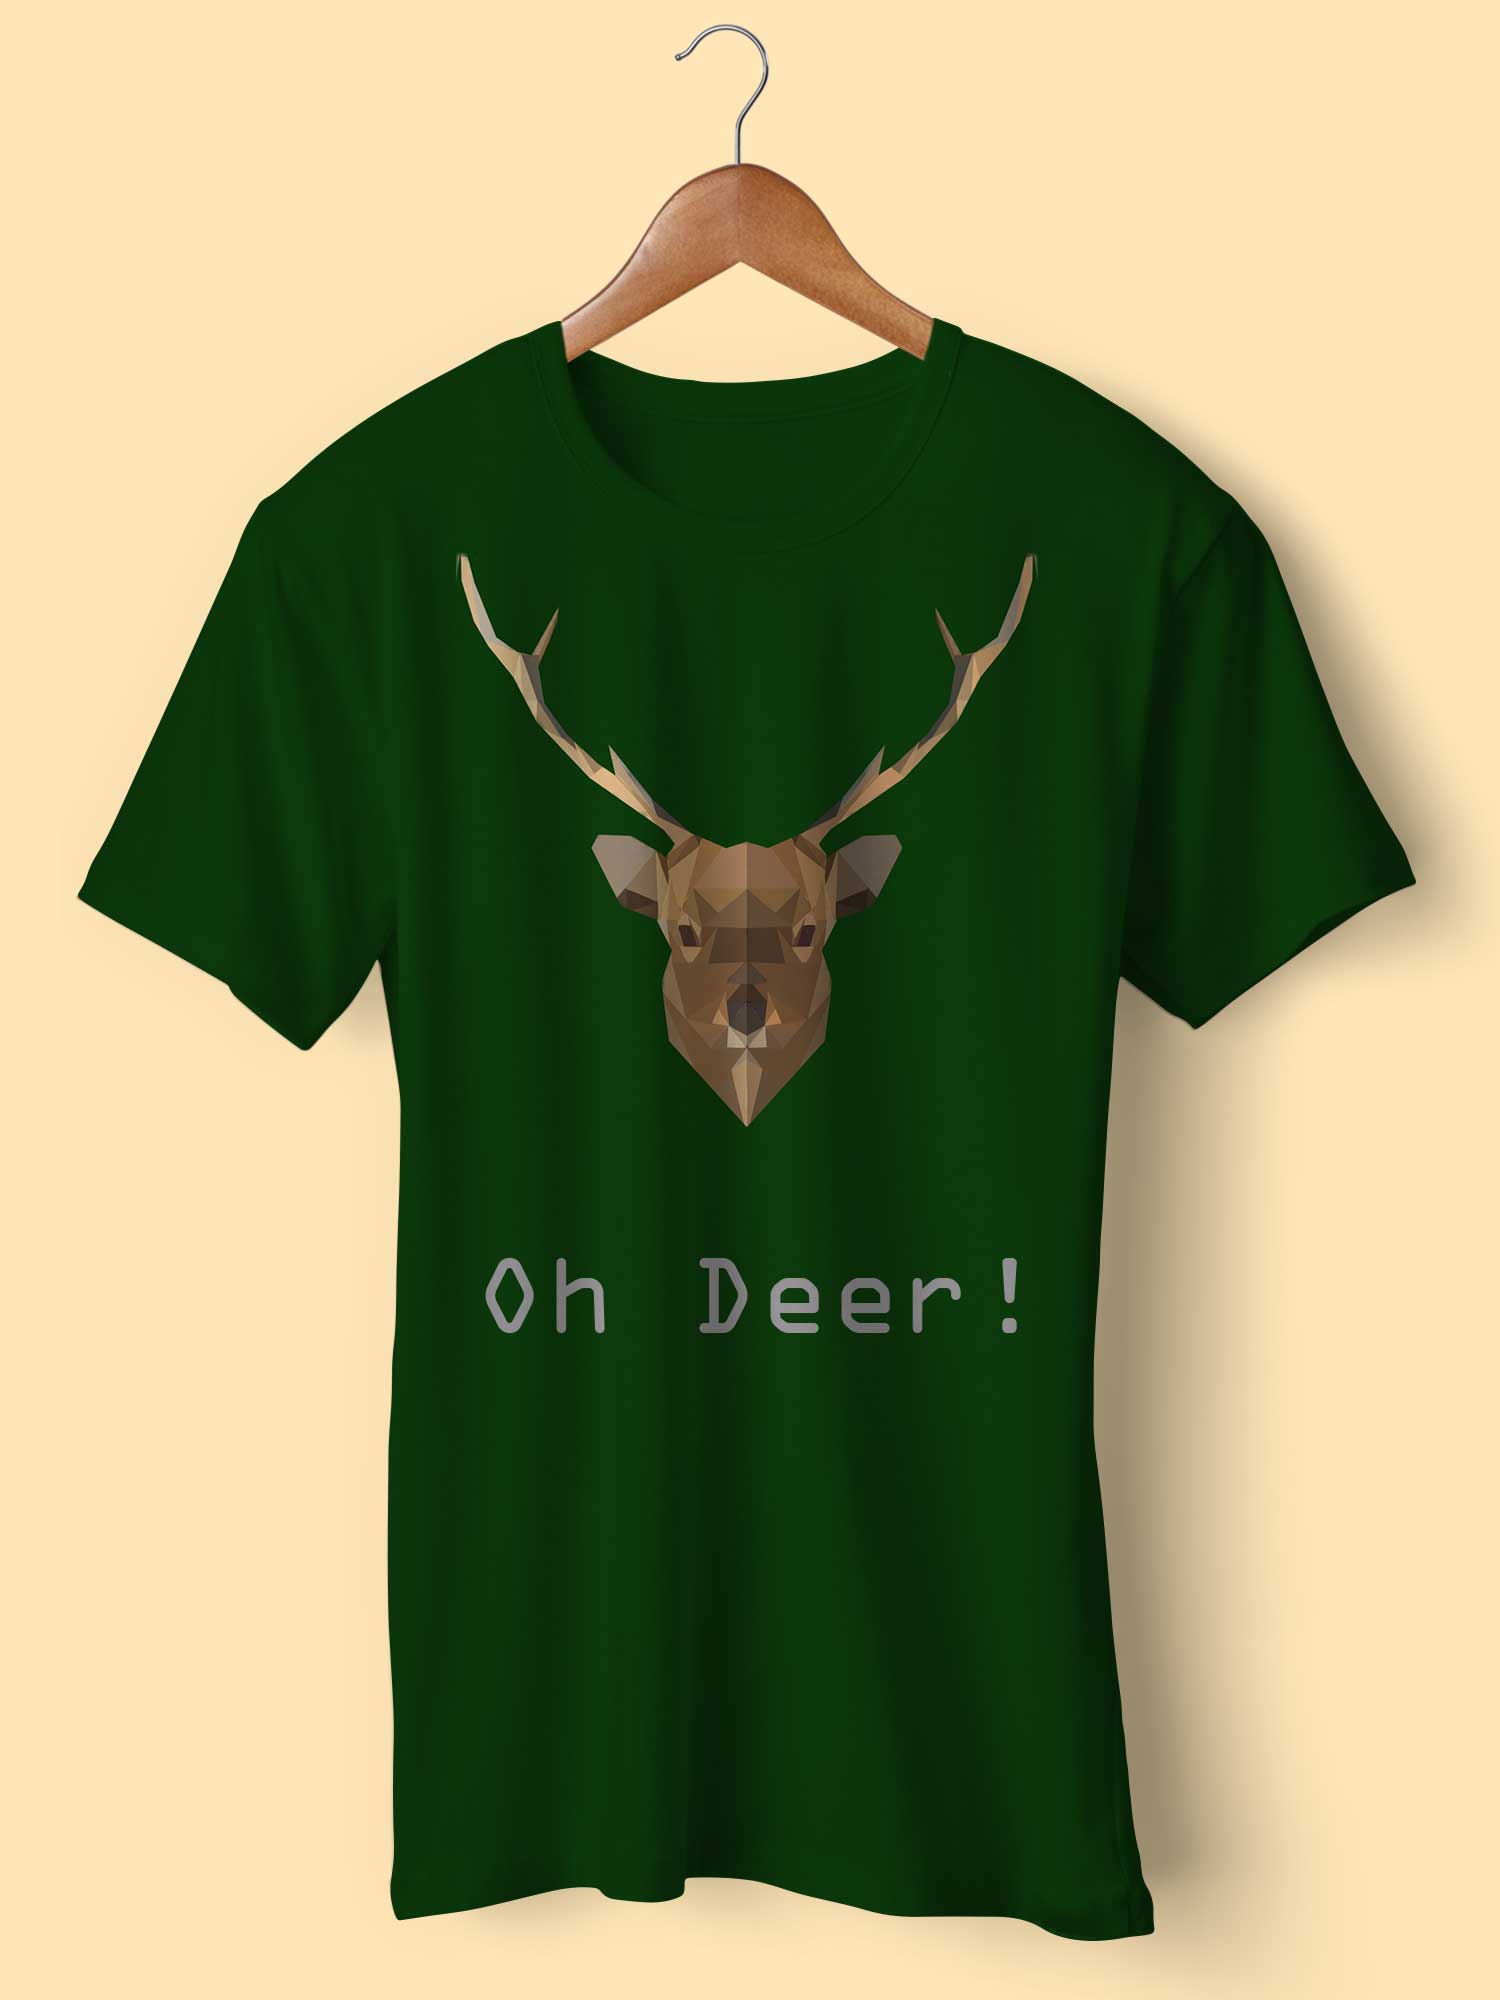 zoovon | Graphic Design | Protfolio | T-shirt Design - Oי Deer